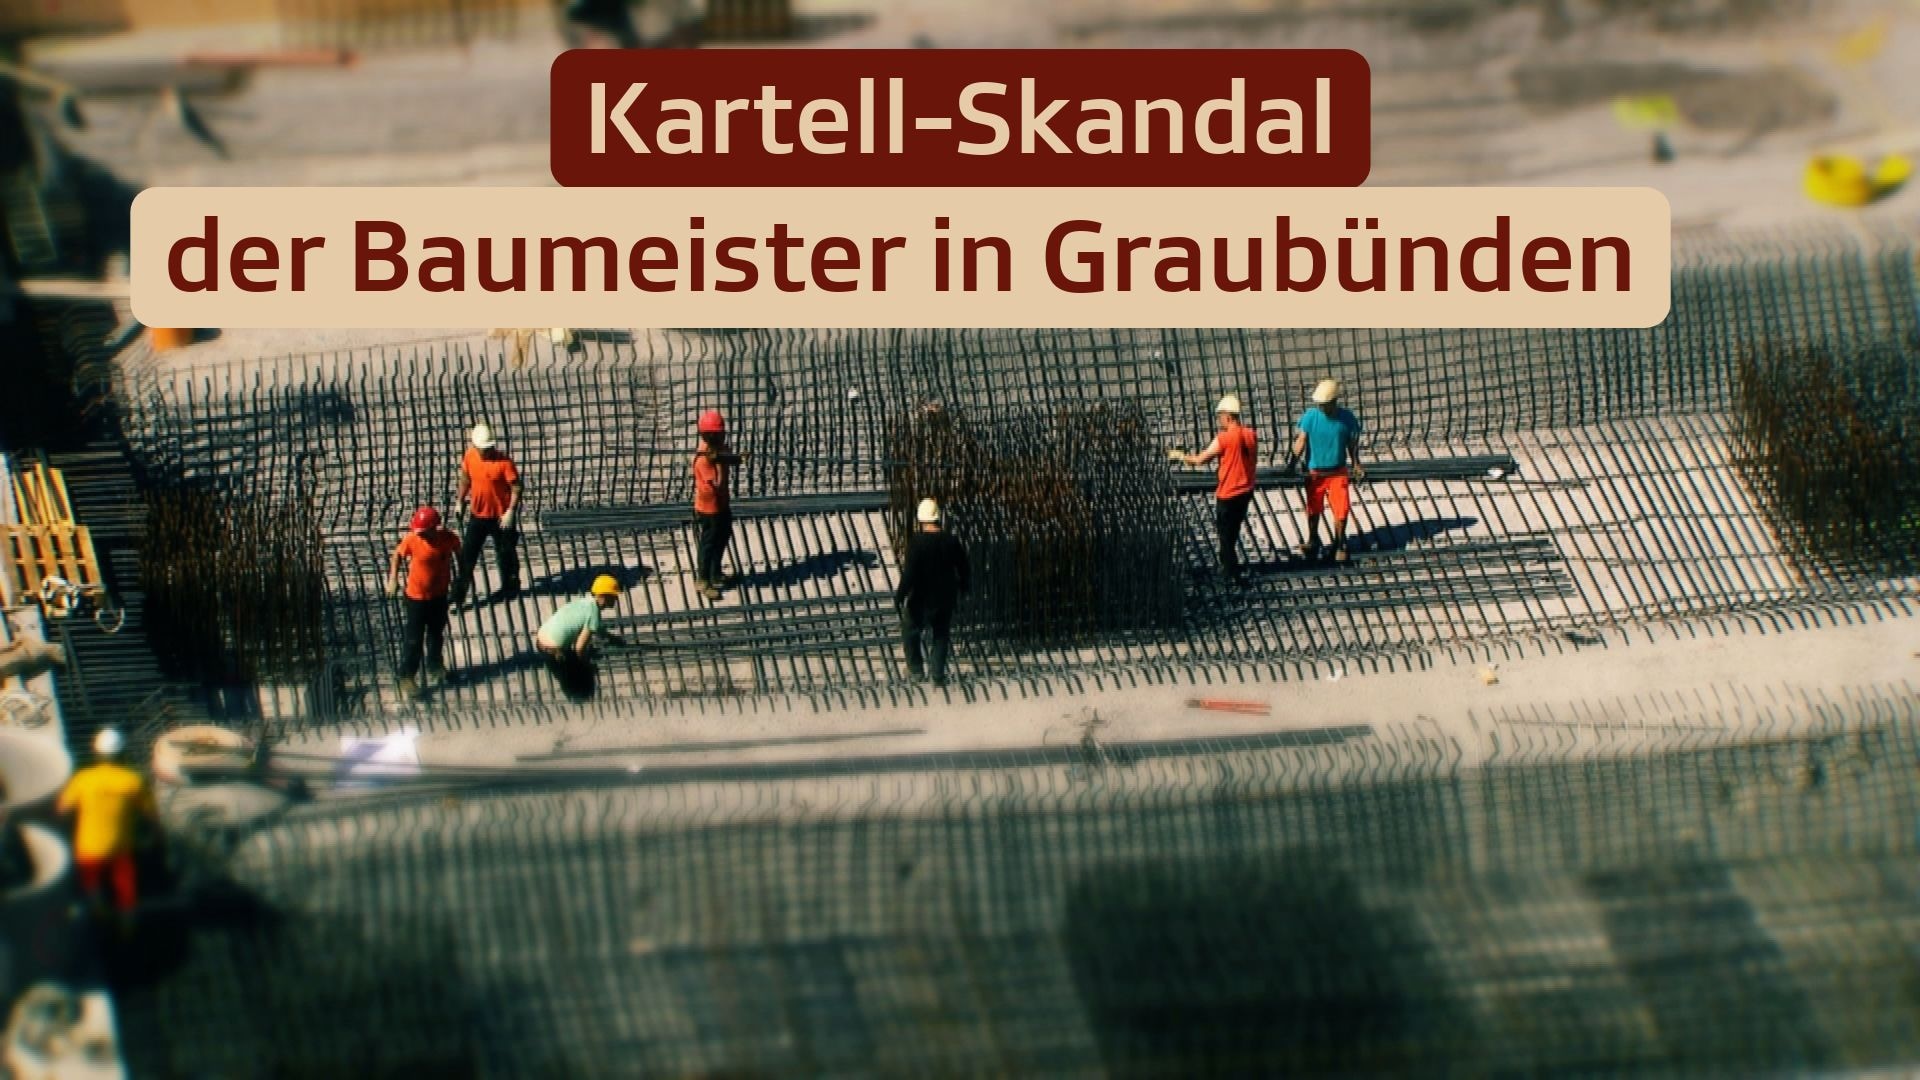 Kartell-Skandal der Baumeister in Graubünden